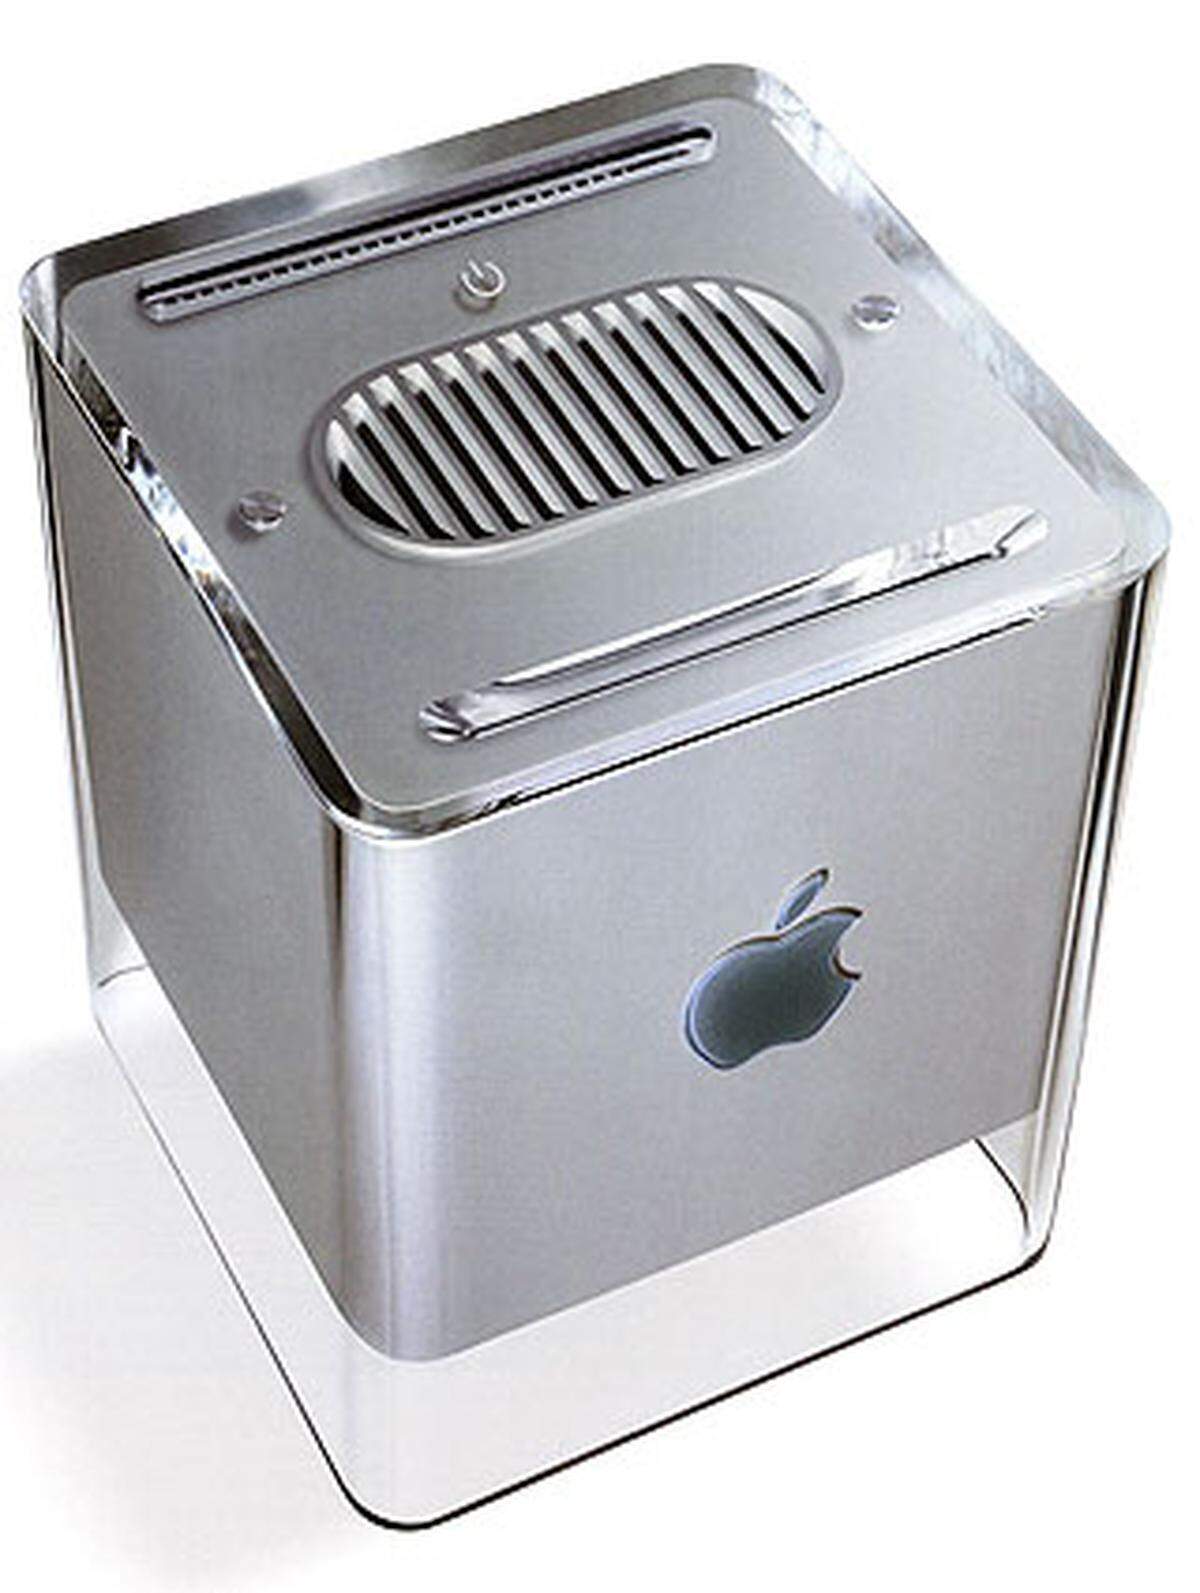 Auch mit dem Cube erlitt Apple Schiffbruch. Obwohl das Gerät viele Design-Preise gewann und aufgrund der lüfterlosen Konstruktion im Betrieb fast geräuschlos war, wurde die Produktion bald wegen schlechter Verkaufszahlen eingestellt. Das Gerät war - verglichen mit anderen G4 Rechner - nicht nur schlechter erweiterbar, sondern auch deutlich teurer.